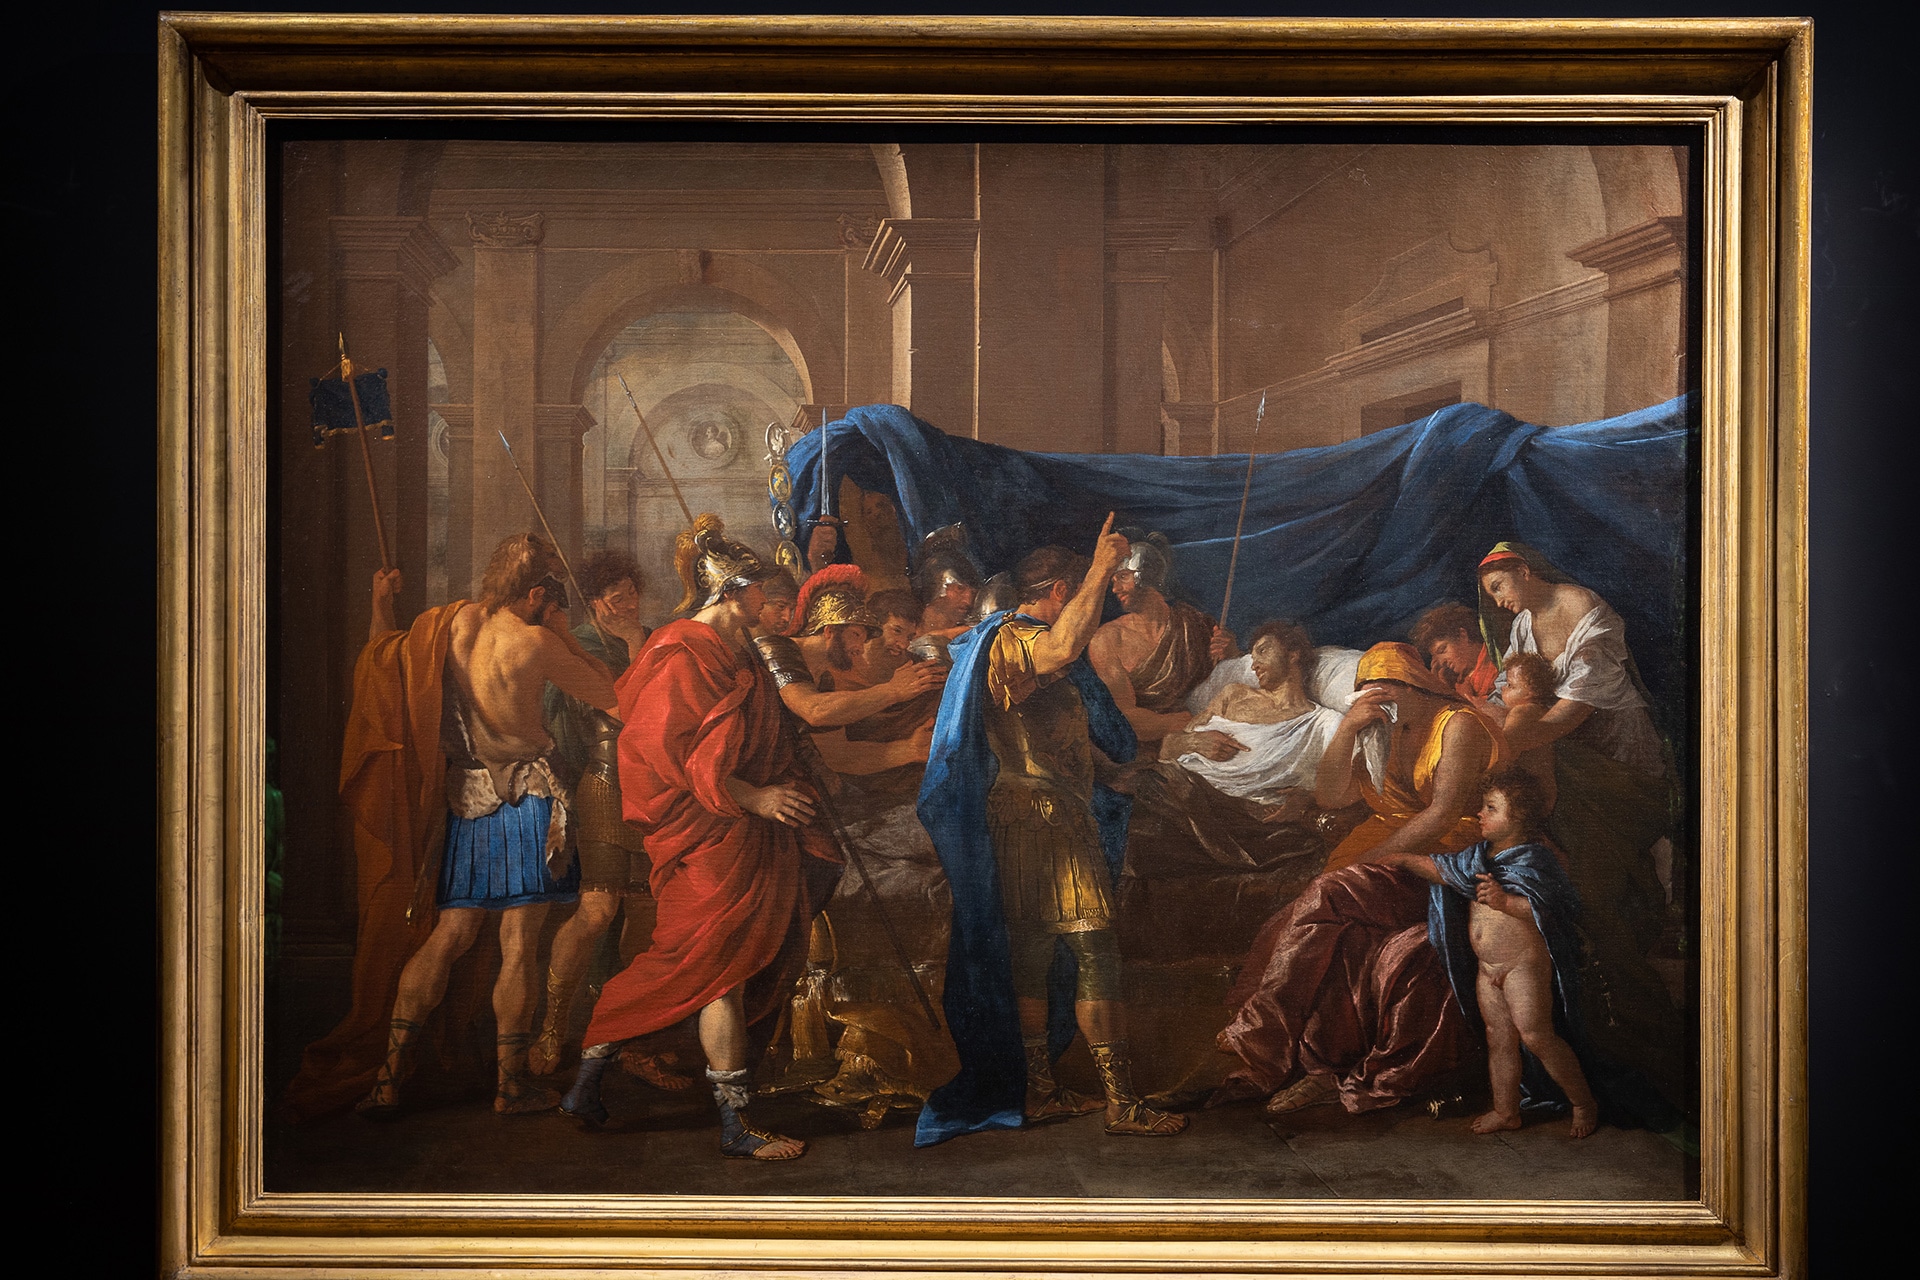 Nicolas Poussin (Les Andelys 1594 - Roma 1665), Morte di Germanico, 1628. Olio su tela, 148 x 198,1 cm. Minneapolis, Minneapolis Institute of Art, The William Hood Dunwoody Fund